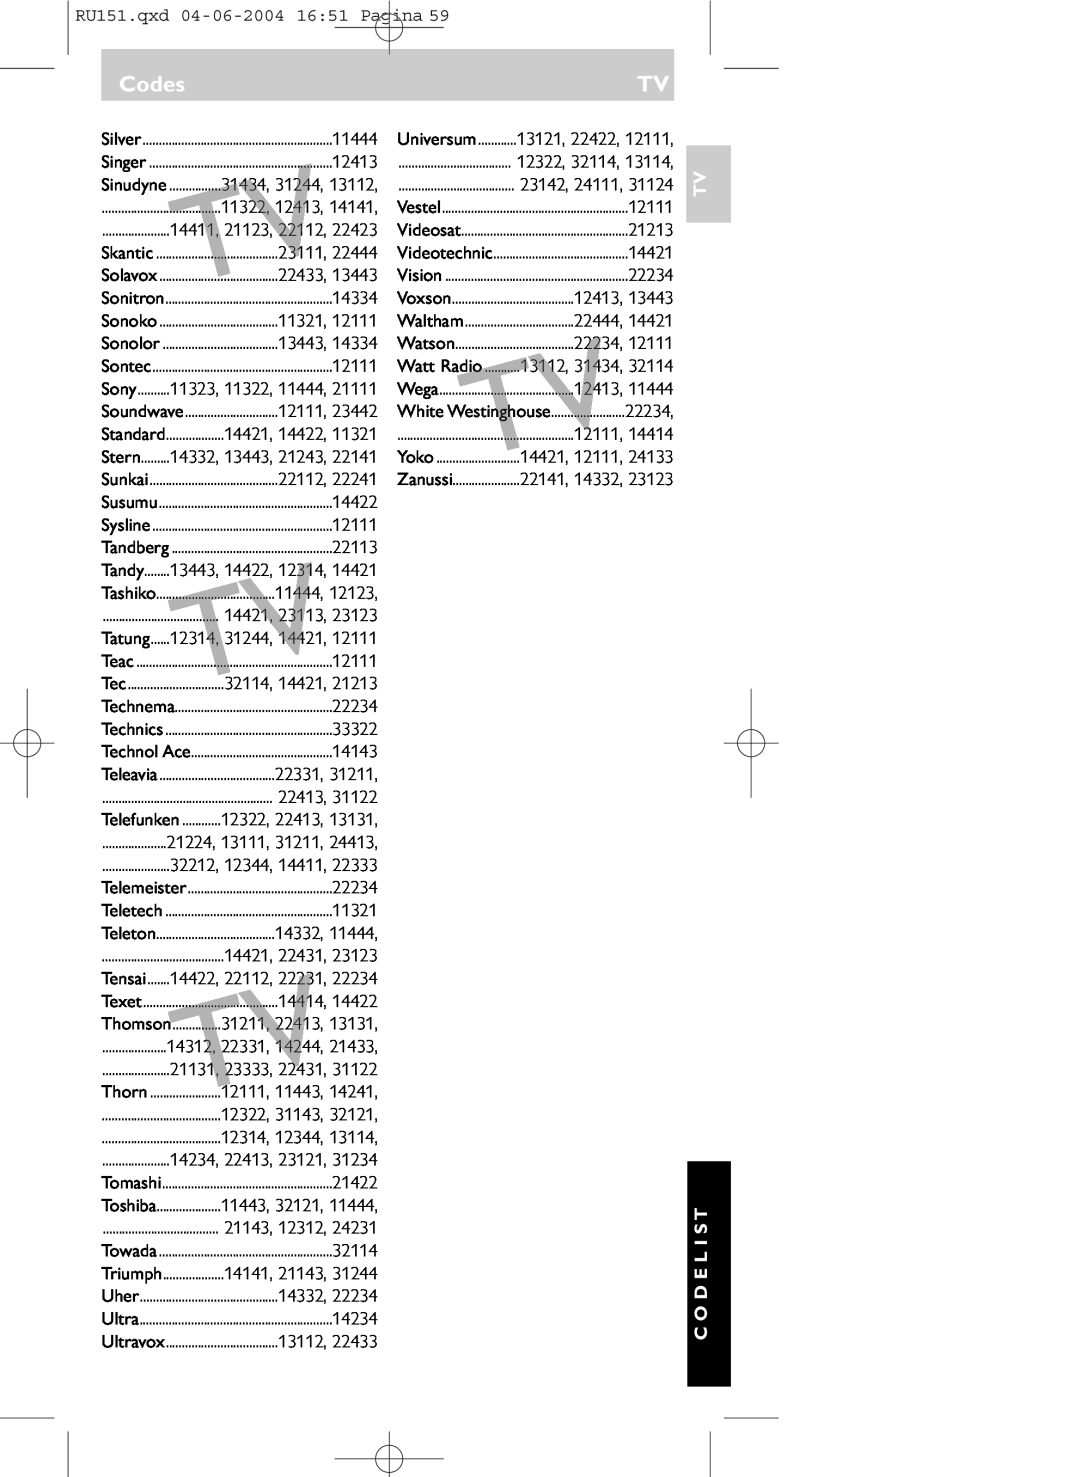 Philips SBC RU 151 manual Codes, 11444, Tv C O D E L I S T 